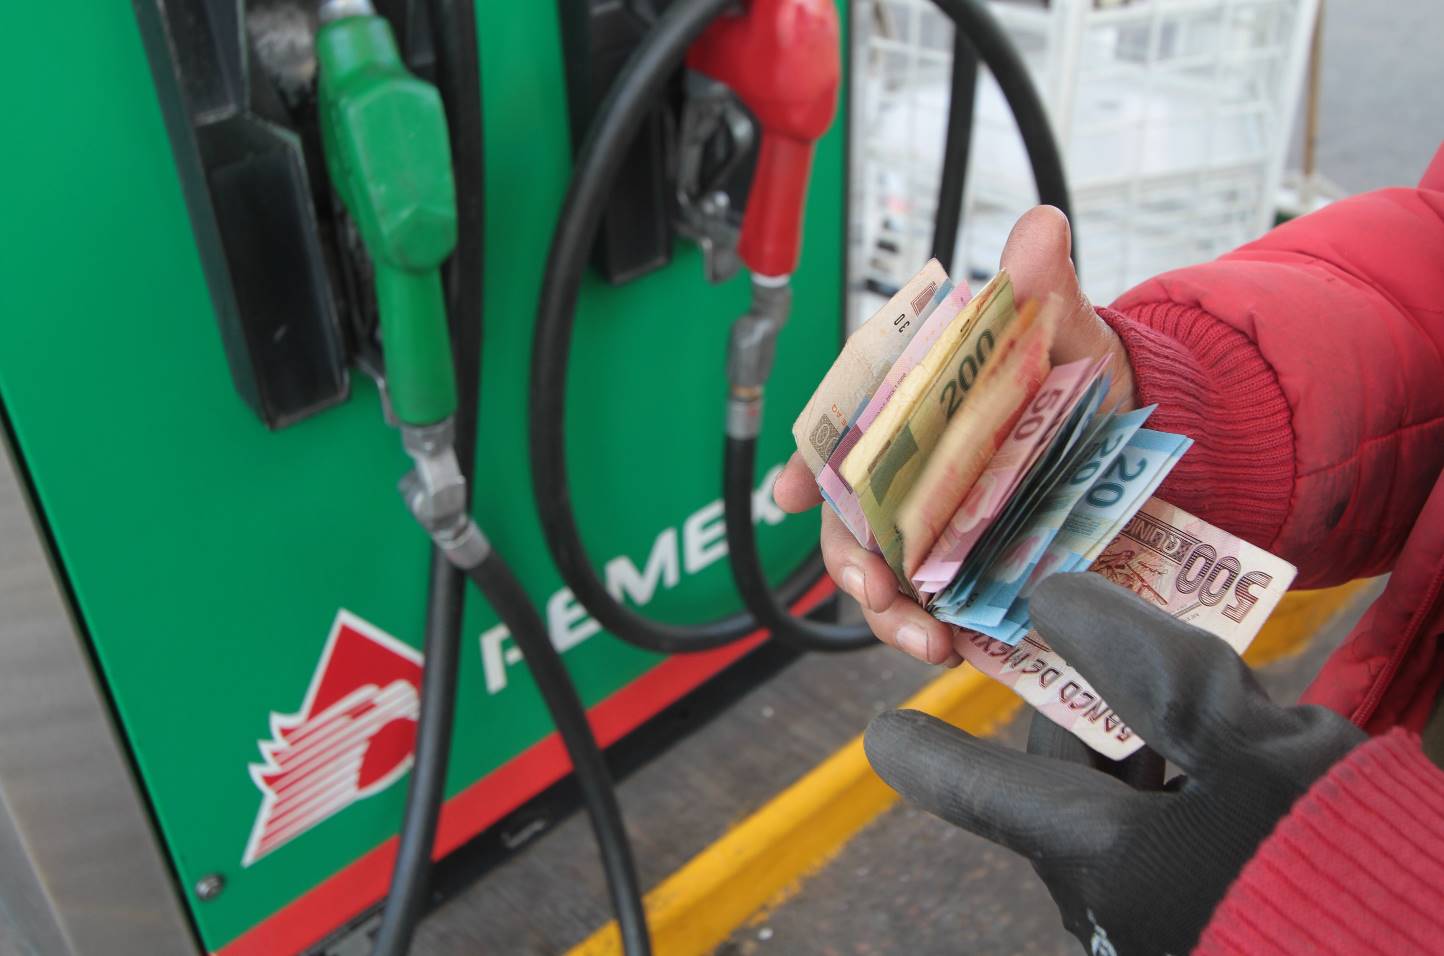  Costo de gasolina se incrementará hasta un 20% en enero